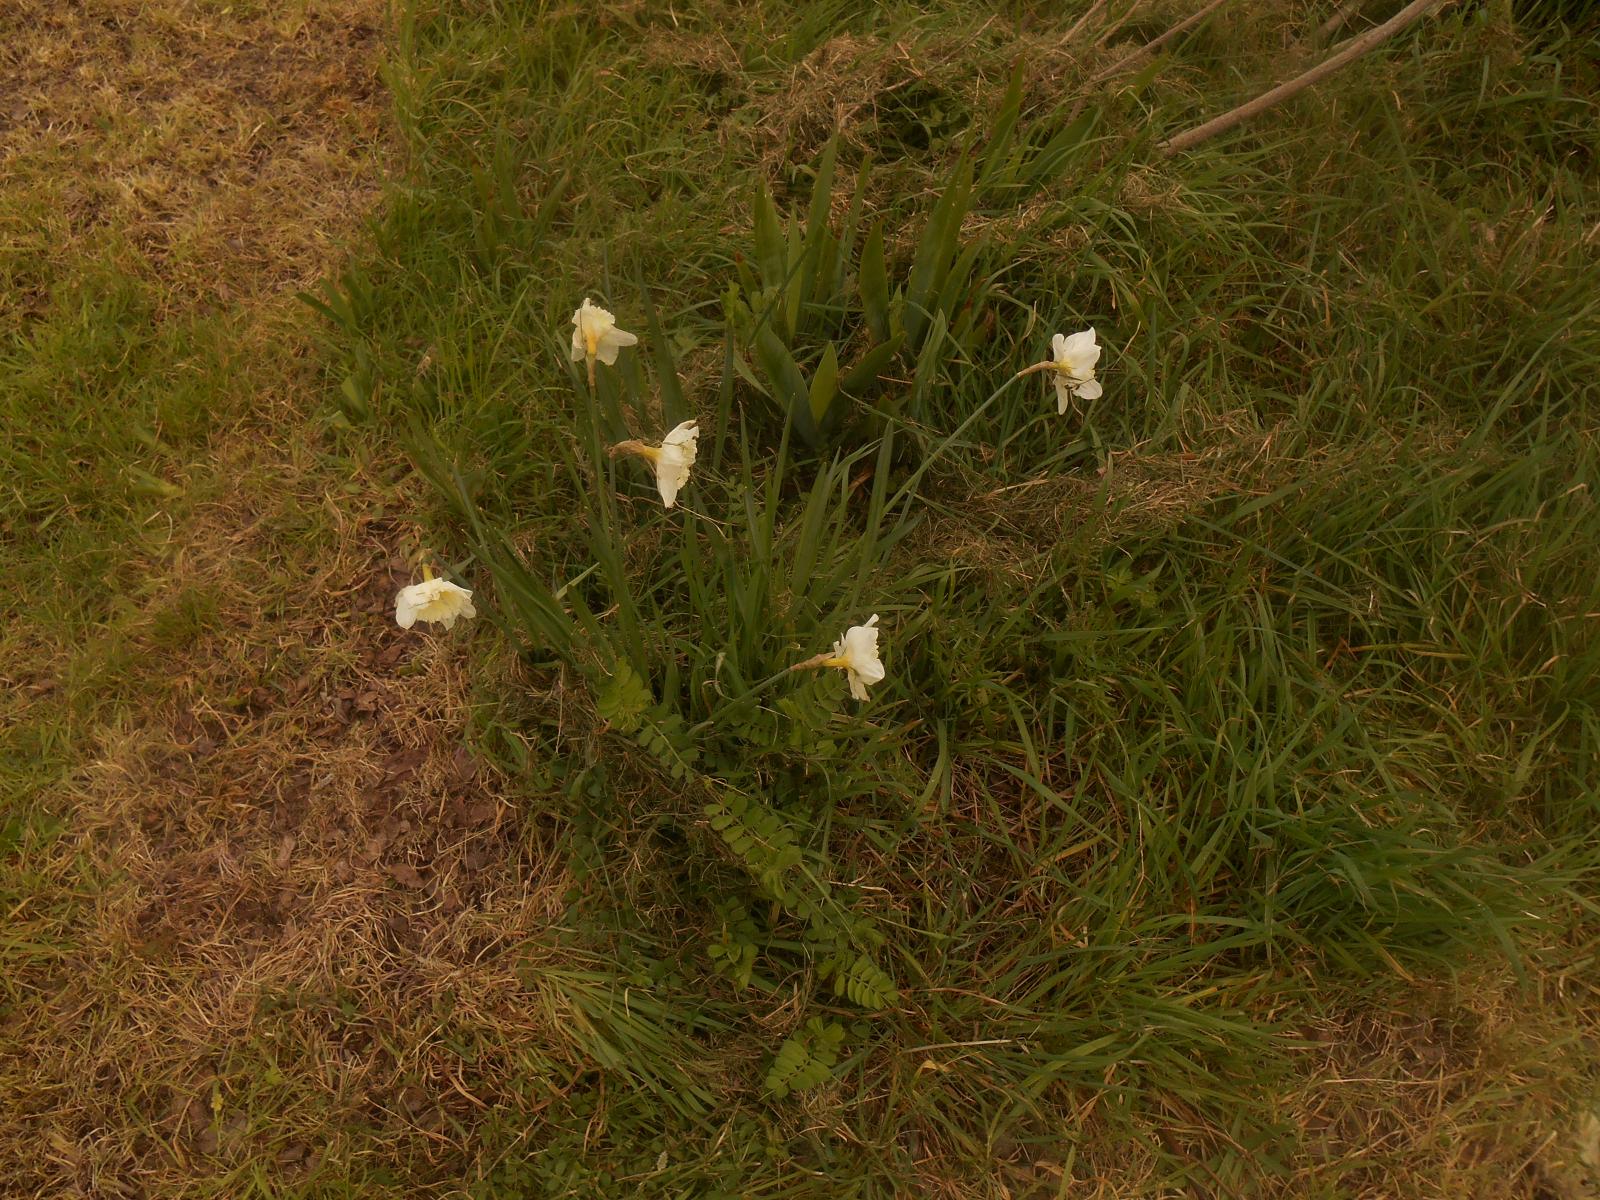 Jolies fleurs blanches (Les Moutiers en Retz)